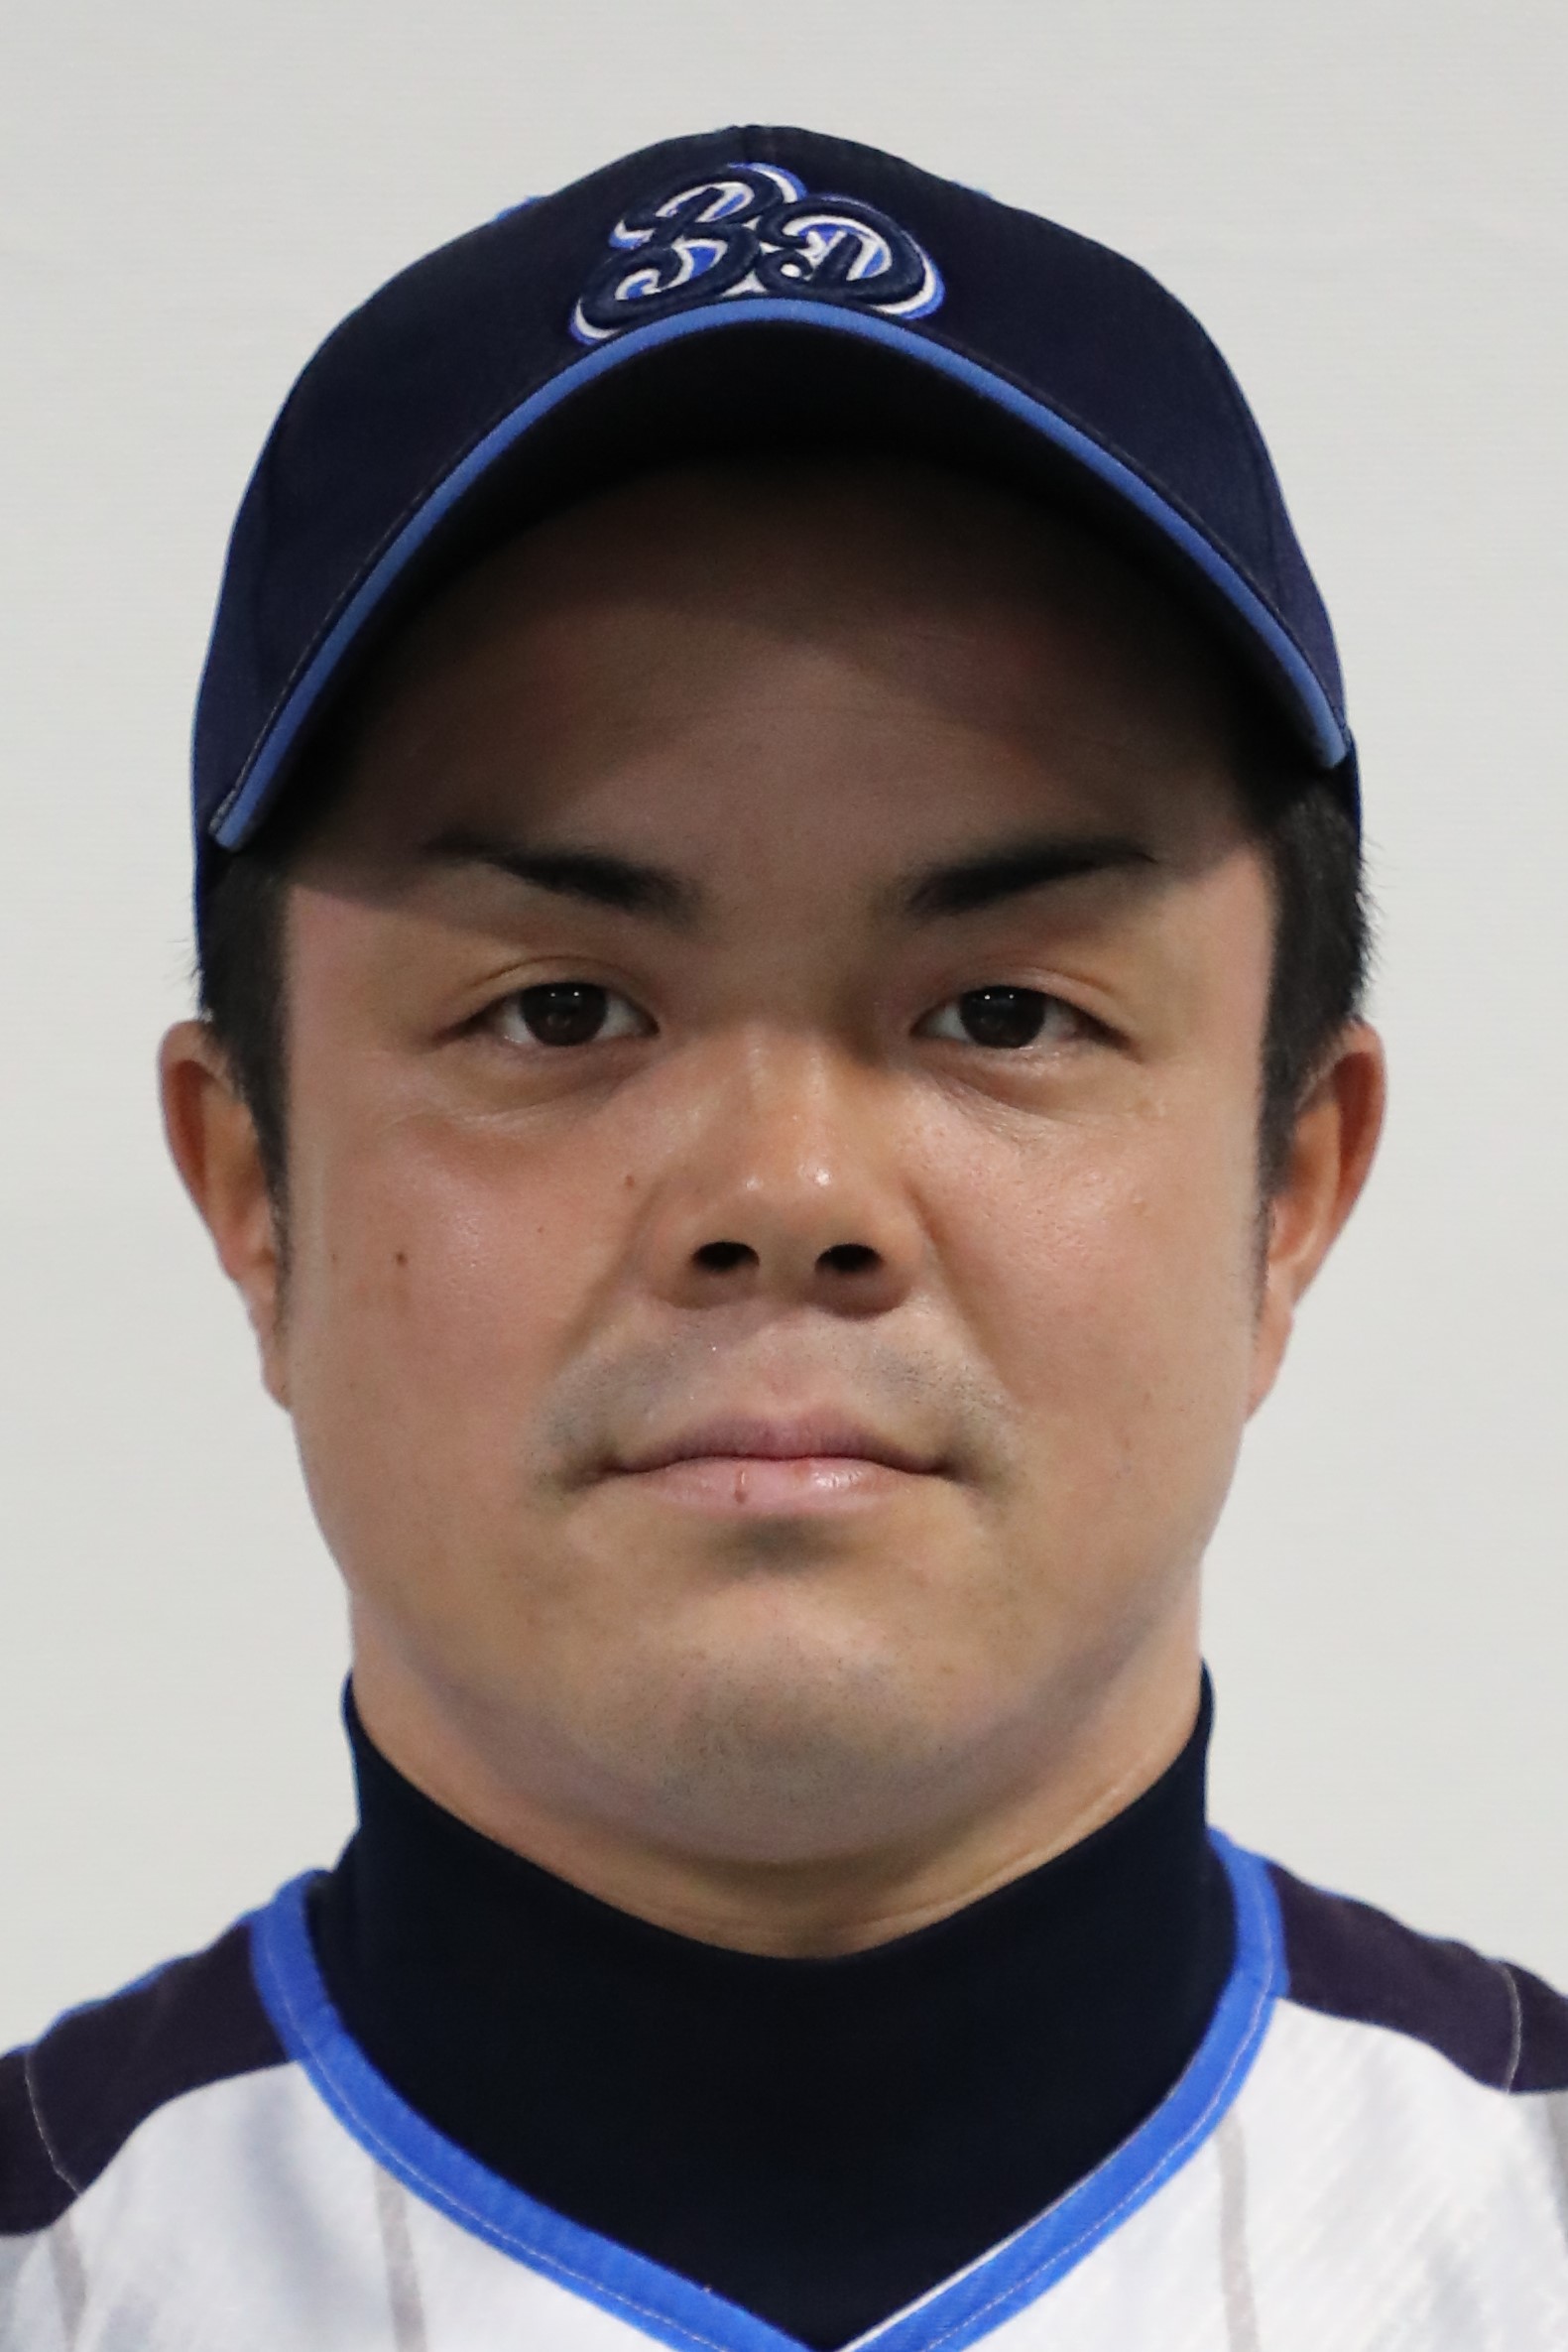 日本野球連盟中国地区連盟の2017年度ベストナインに指名打者として選出された岸村祥太郎選手兼コーチ